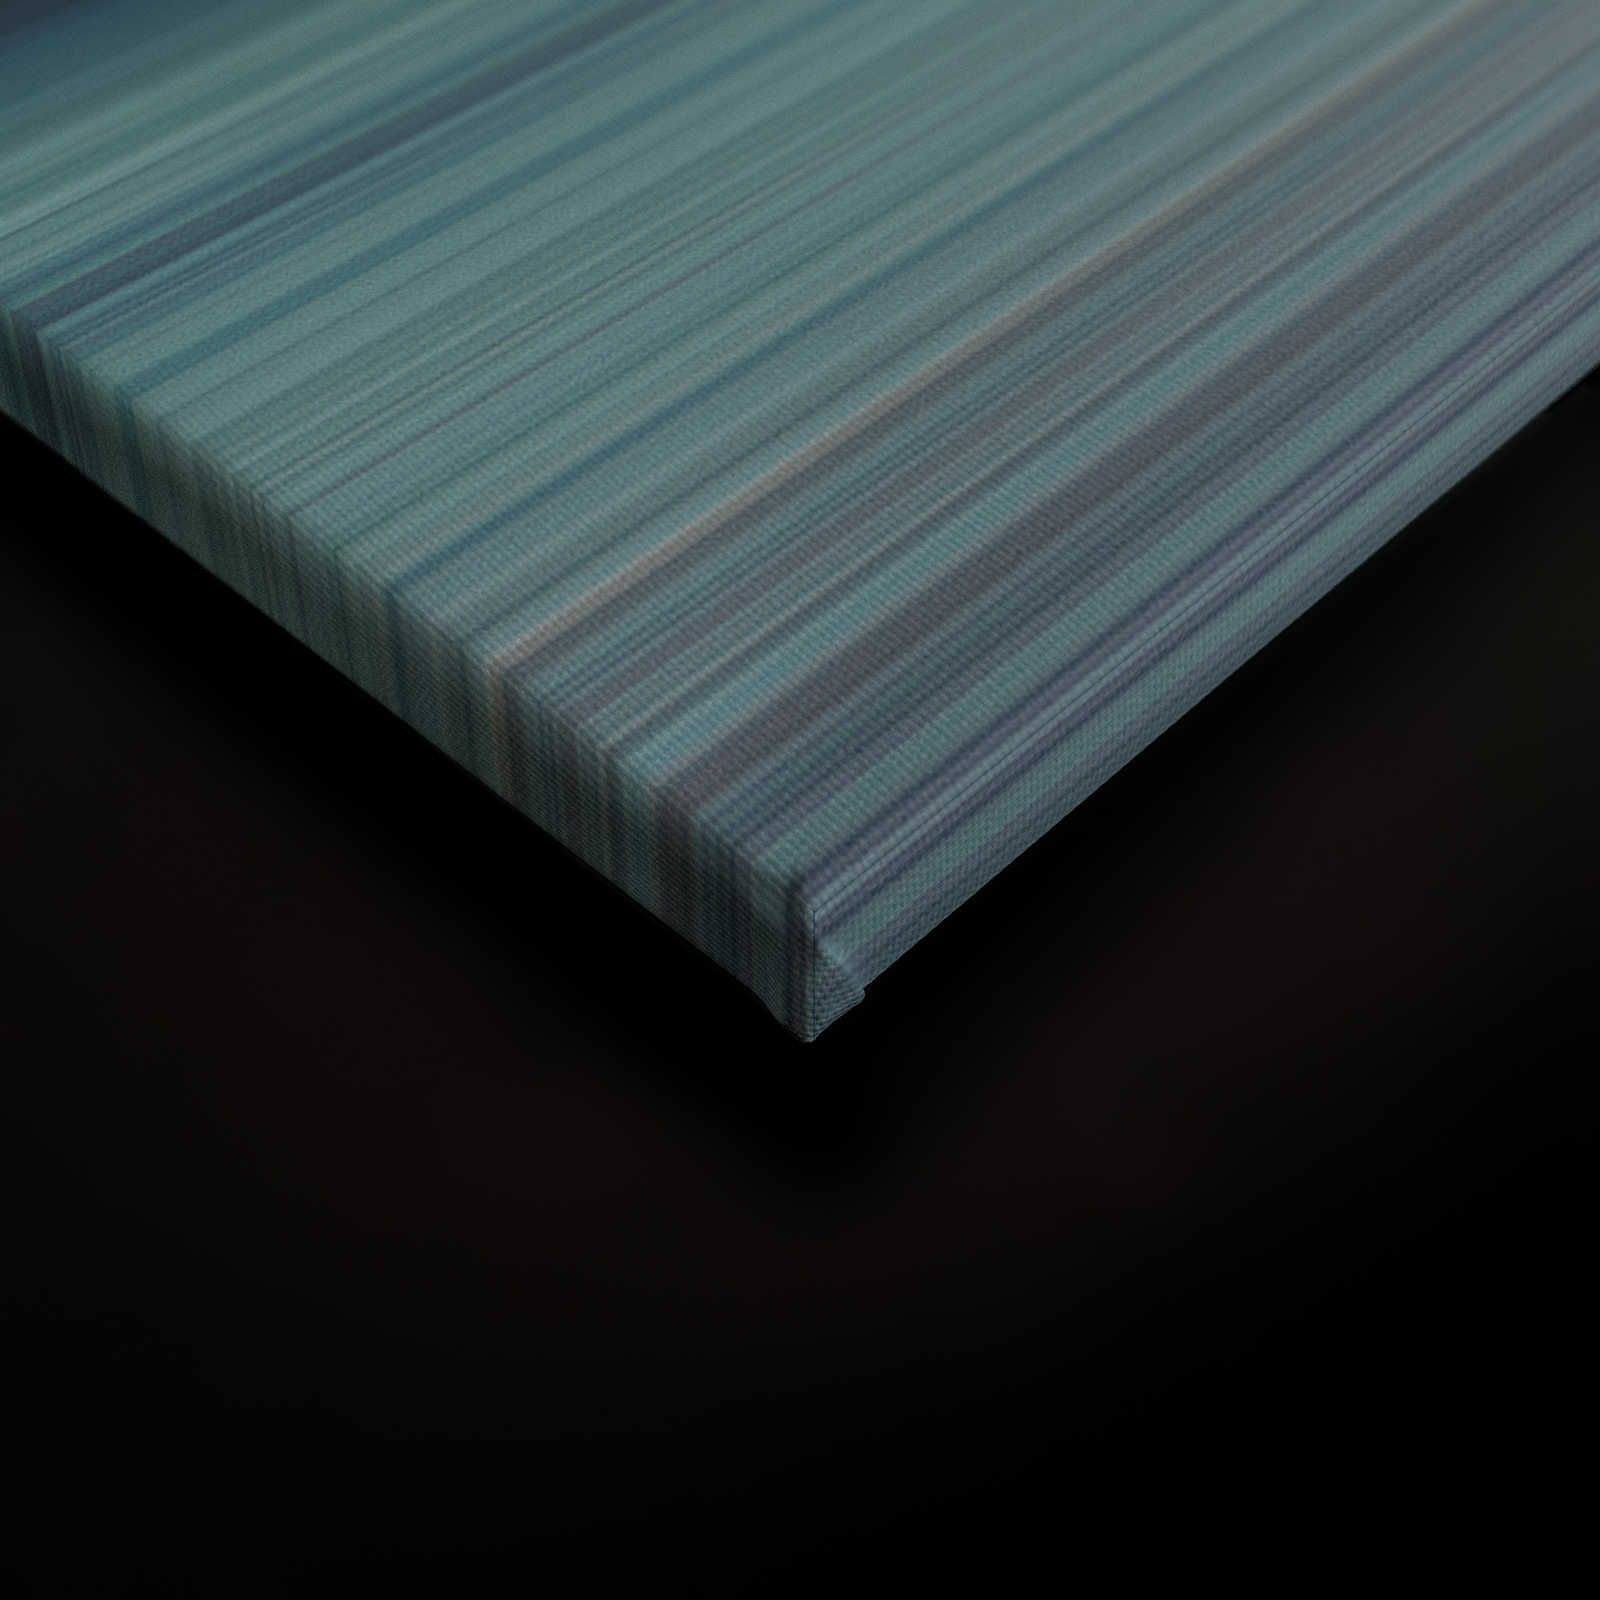             Horizon 1 - Leinwandbild abstrakte Landschaft in Blau – 0,90 m x 0,60 m
        